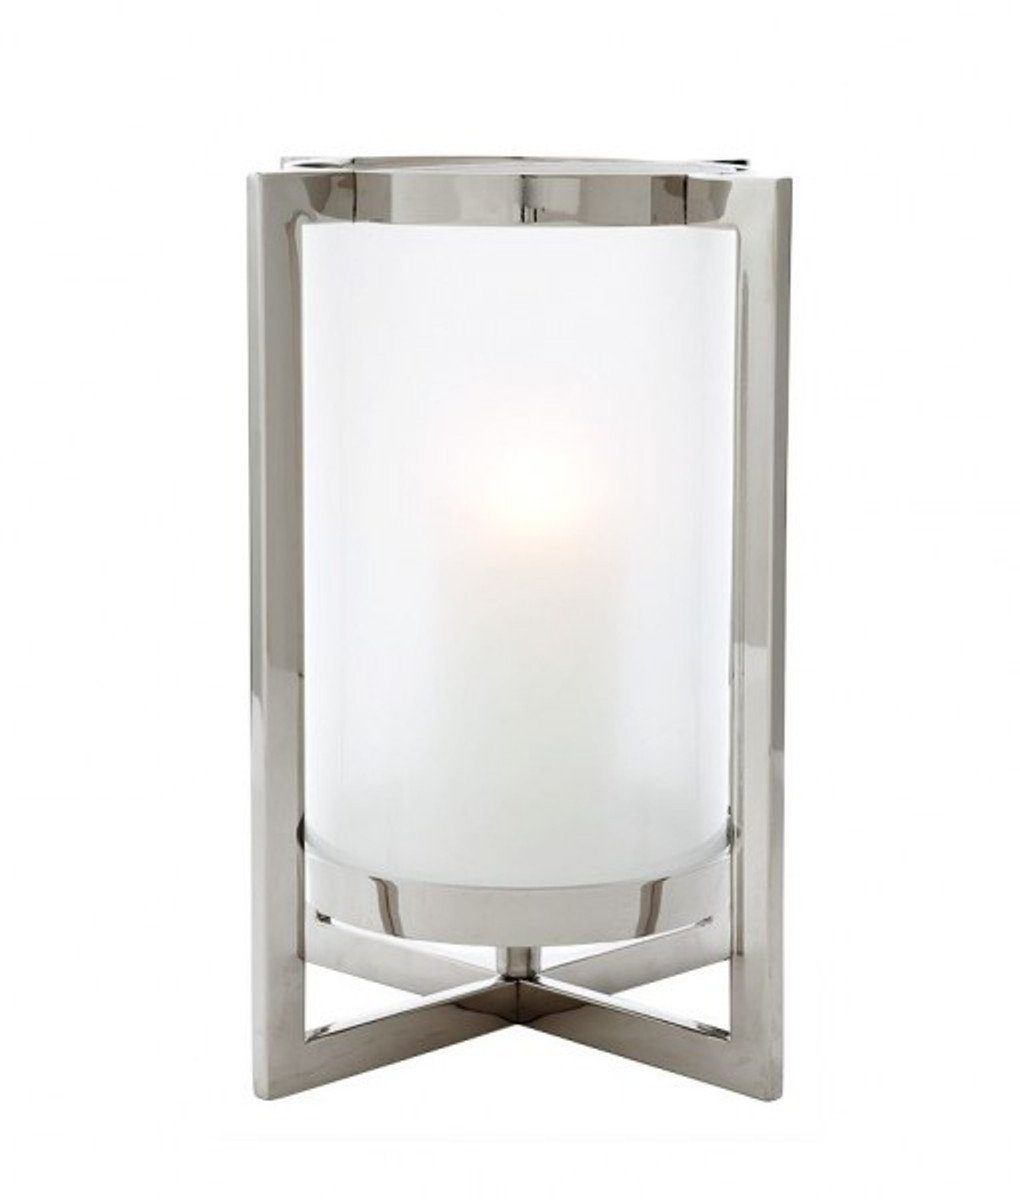 Casa Padrino Windlicht Luxus Windlicht / Kerzenleuchter Nickel Finish 36 x H. 46 cm - Luxus Accessoires